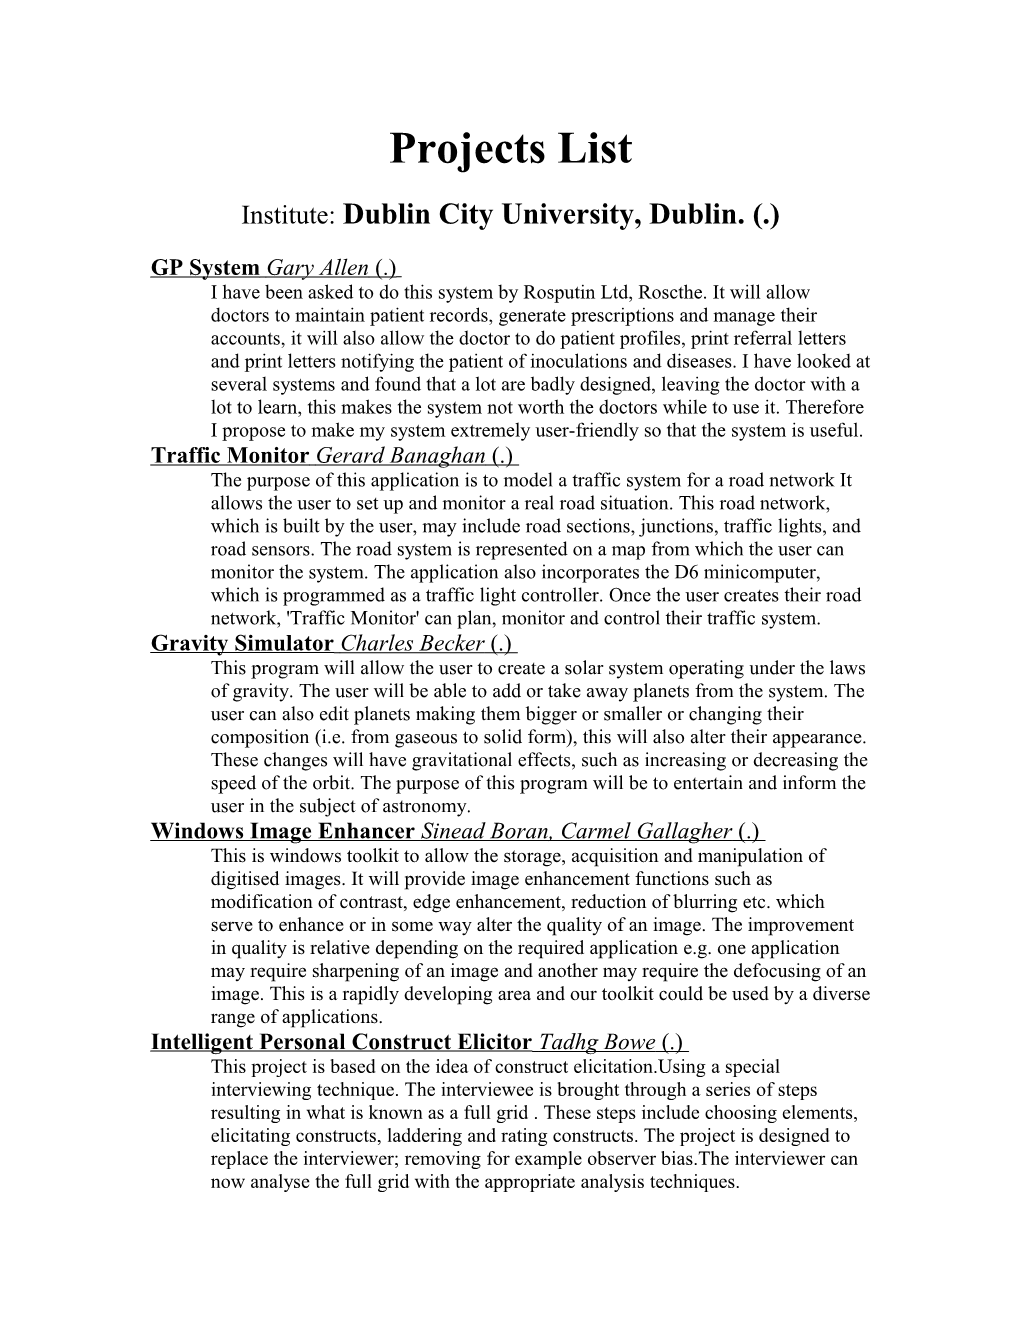 Institute: Dublin City University, Dublin. (.)